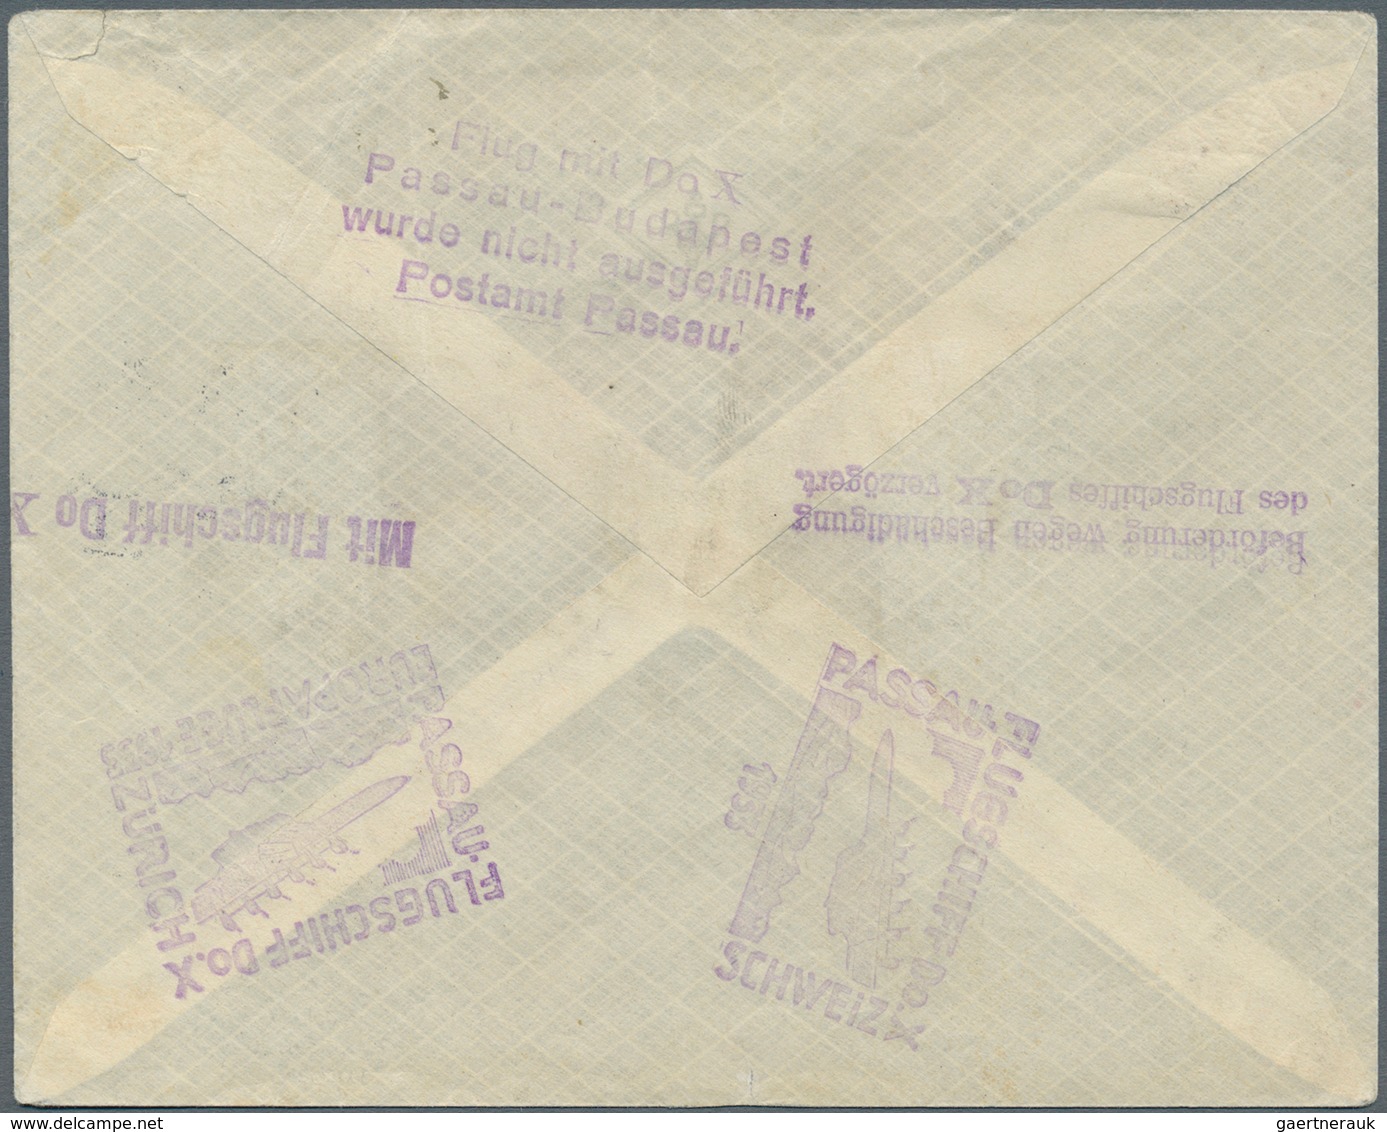 DO-X - Flugpost: 1933, DO-X EUROPAFLÜGE PASSAU-BUDAPEST, Urprünglich Frankiert Mit 20 Pfg. Ebert Ent - Airmail & Zeppelin